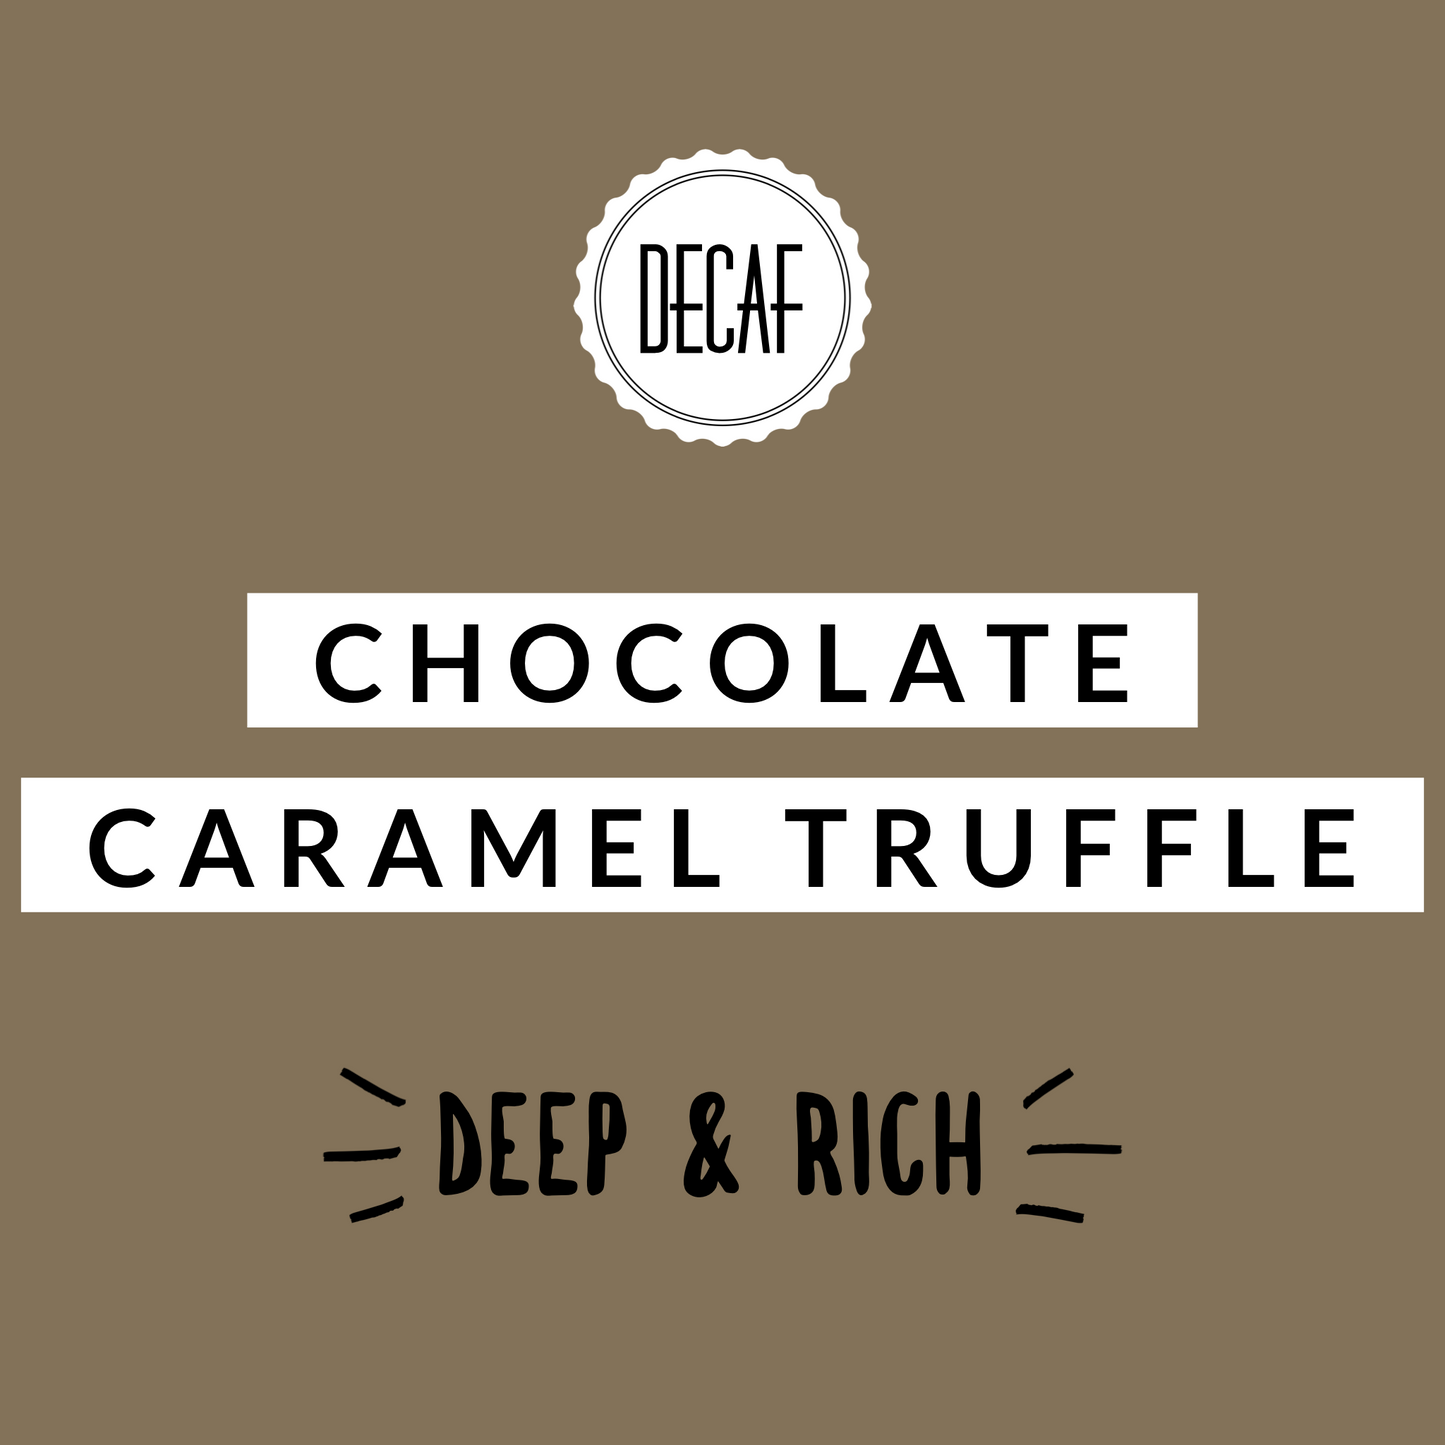 Chocolate Caramel Truffle Decaf